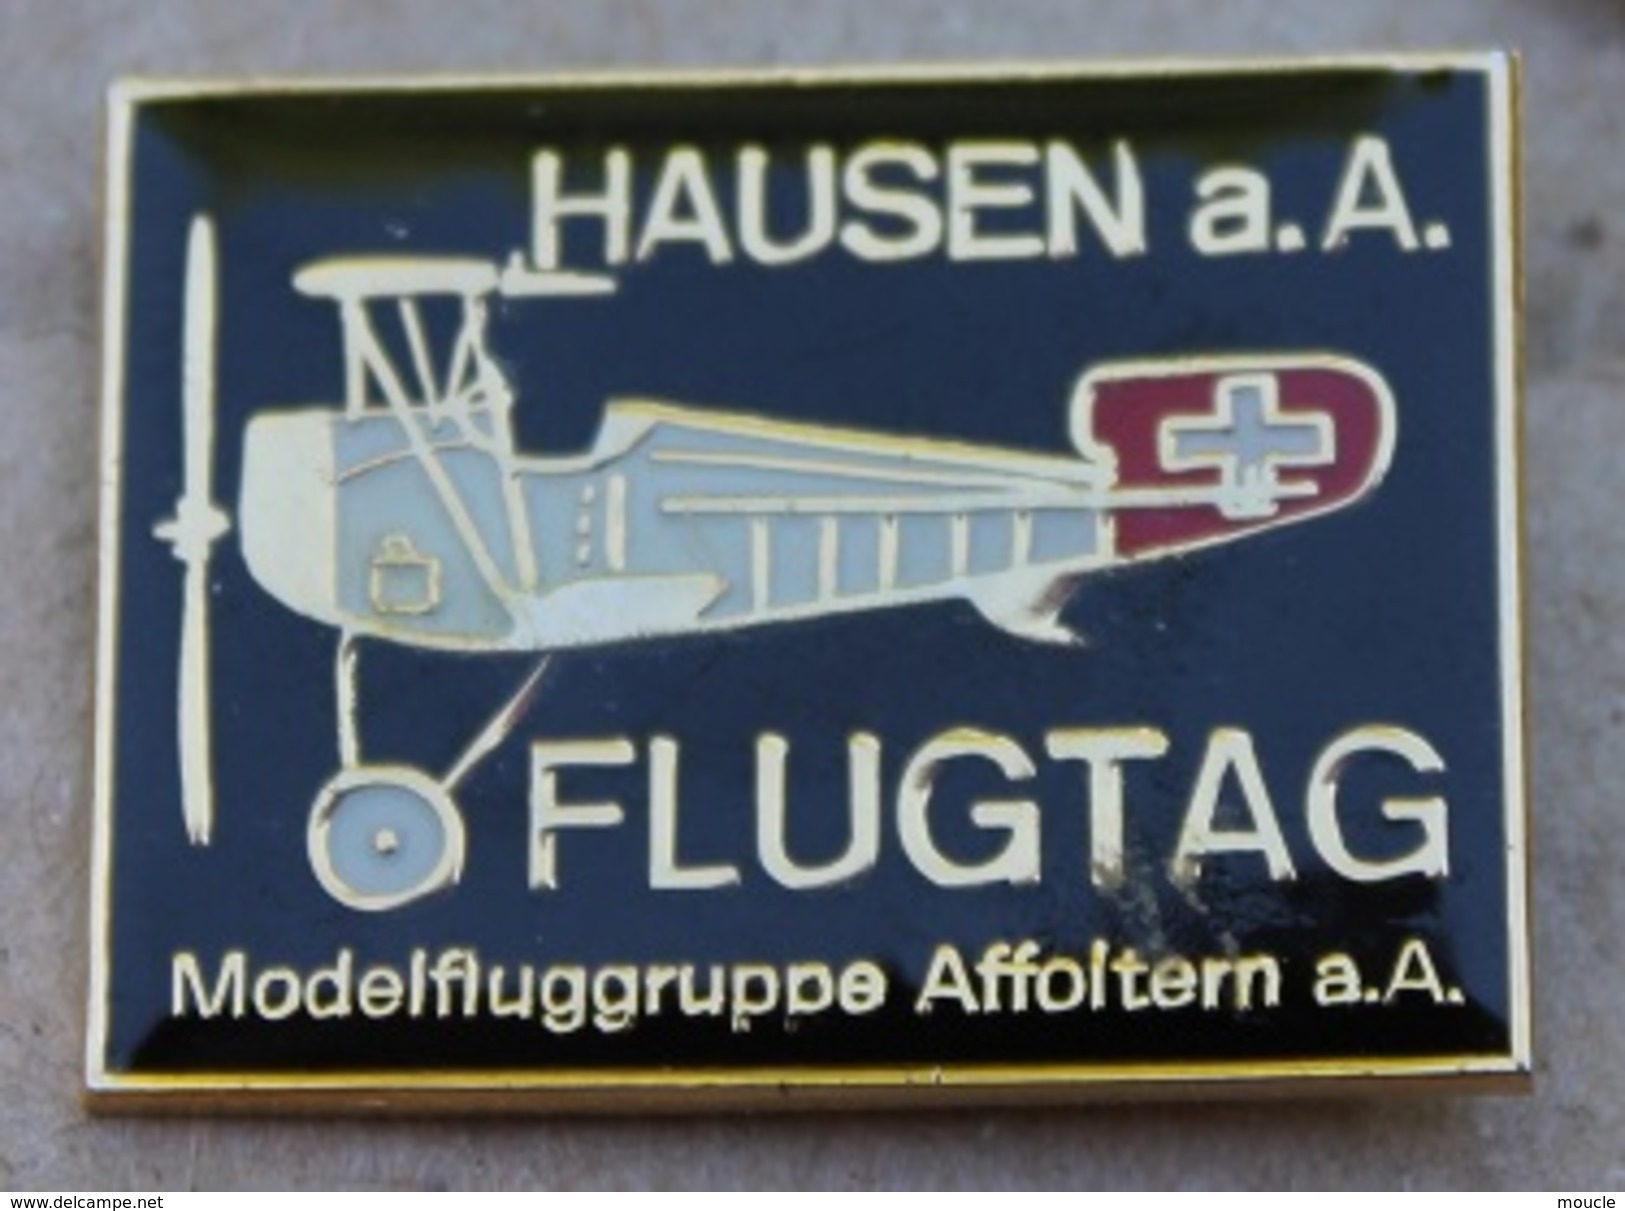 AVION - HAUSEN A.A FLUGTAG - MODELFLUGGRUPPE AFFOLTERM A.A - SCHWEIZ - SUISSE -    (JAUNE) - Aerei